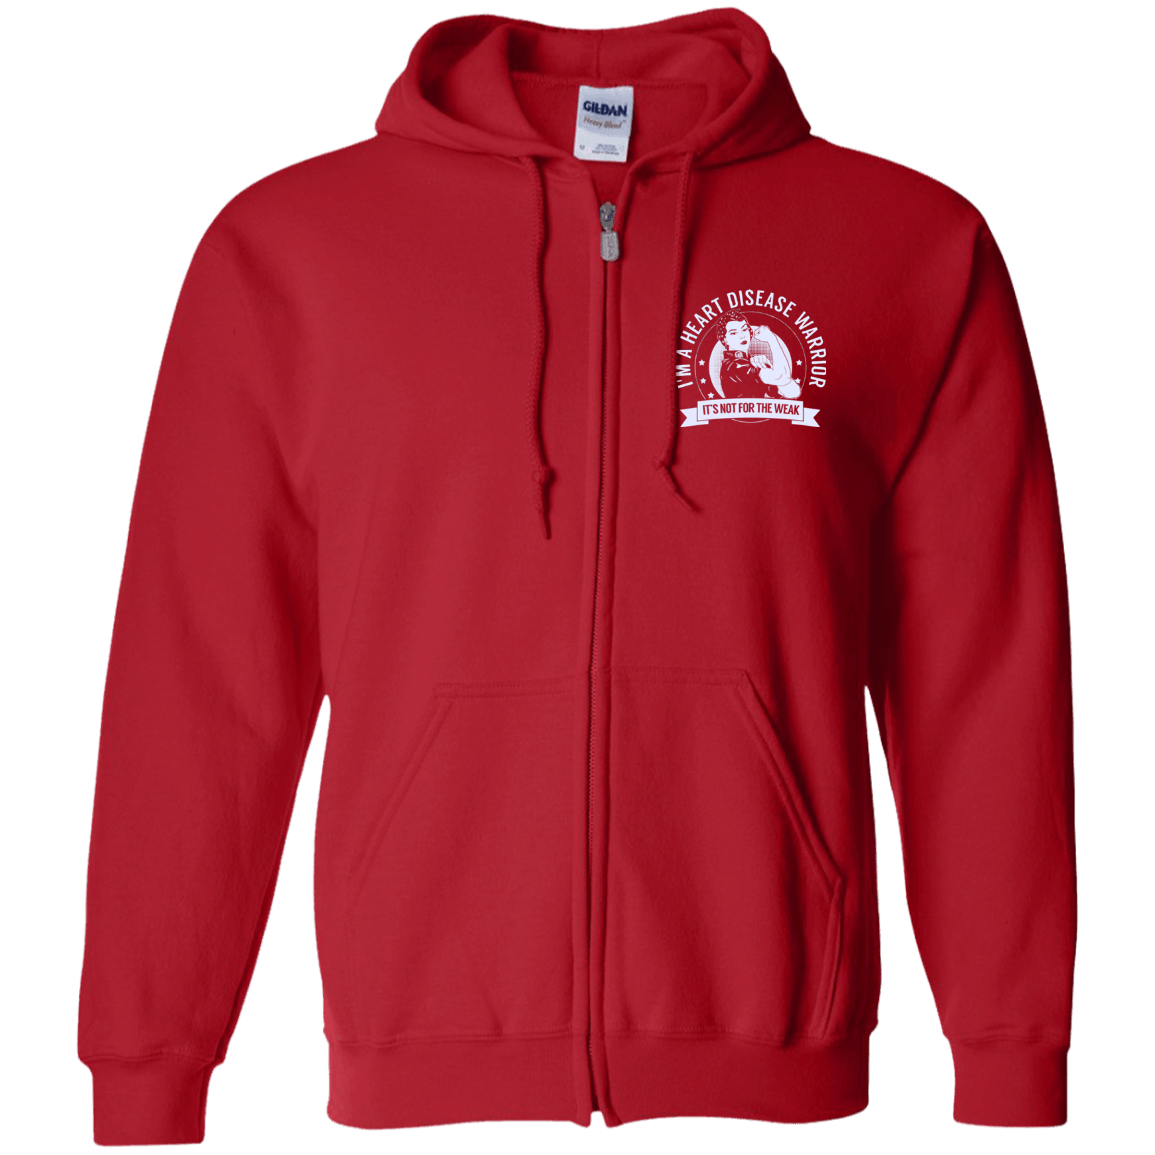 Heart Disease Warrior NFTW Zip Up Hooded Sweatshirt - The Unchargeables